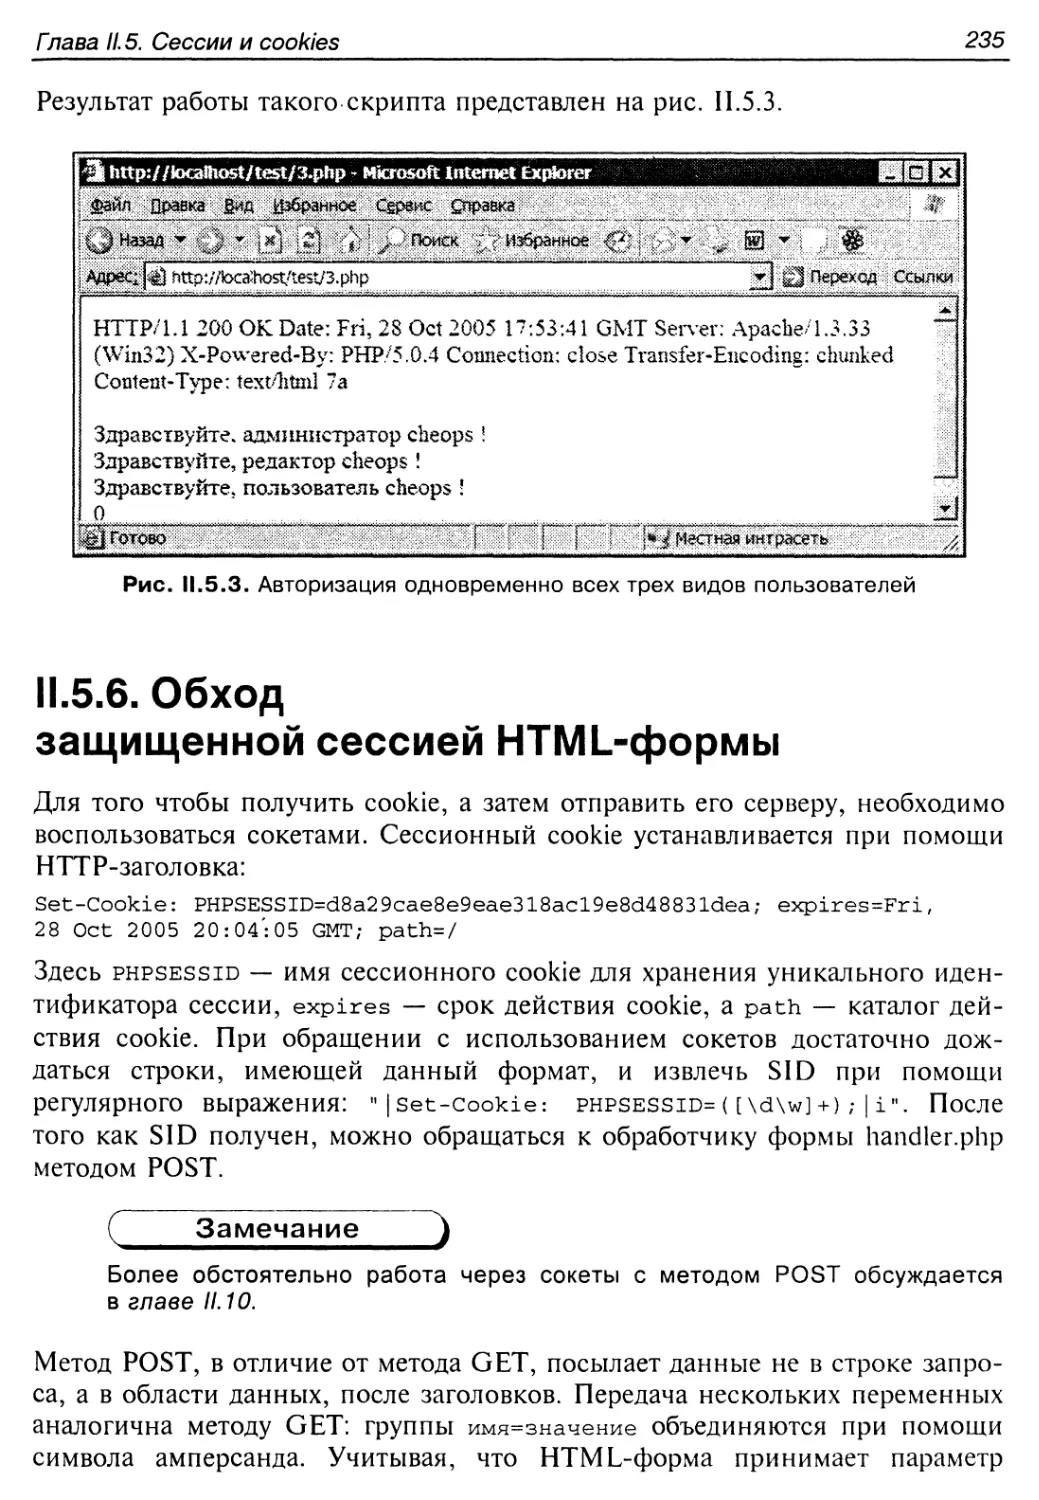 II.5.6. Обход защищенной сессией HTML-формы